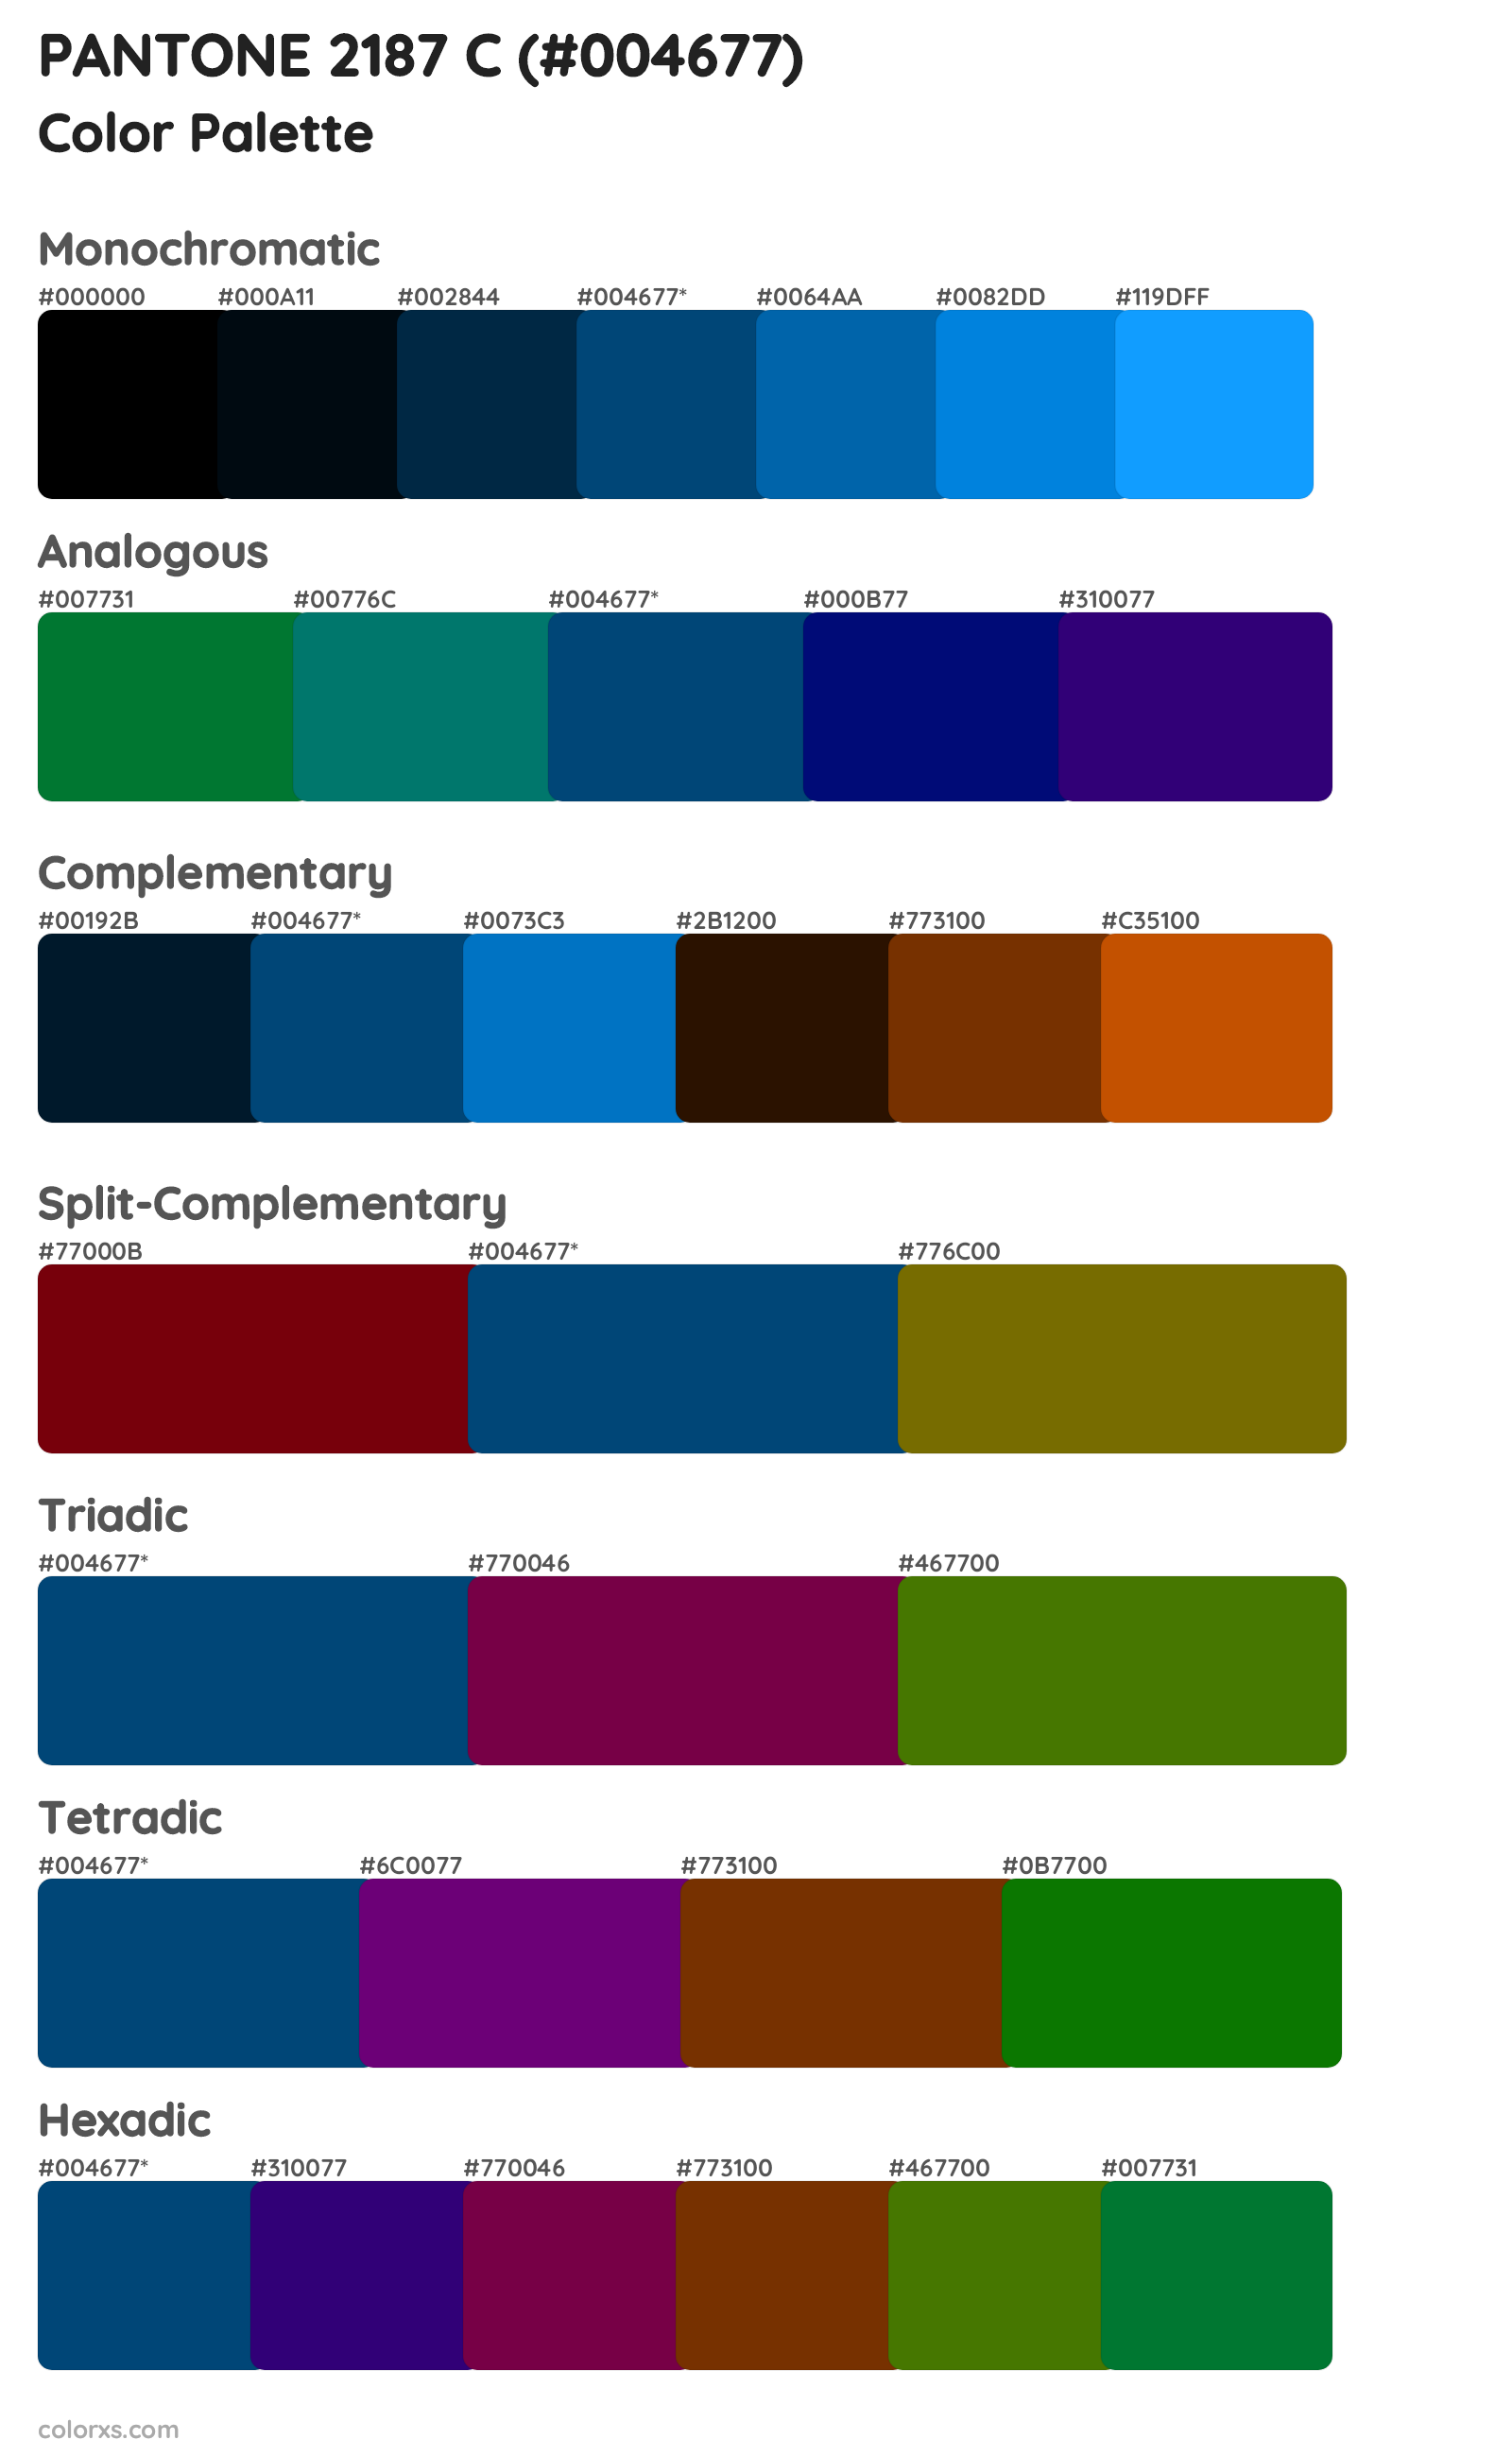 PANTONE 2187 C Color Scheme Palettes